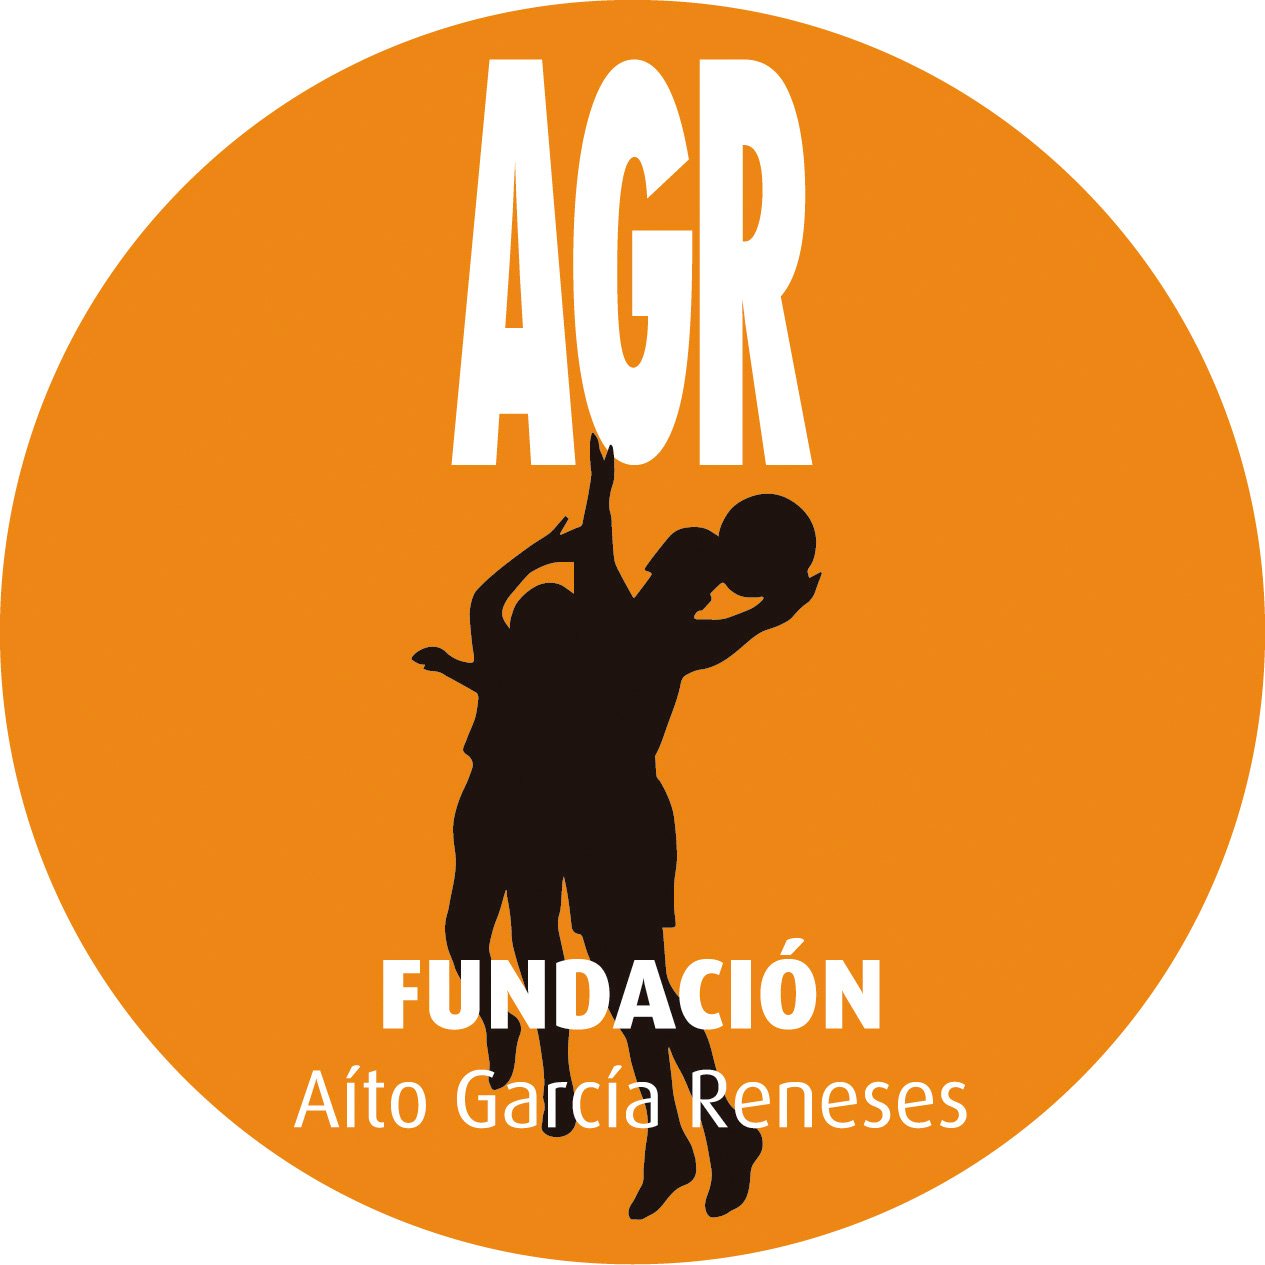 La Fundación nace gracias a la inquietud de Aíto García Reneses por fomentar el baloncesto como medio de integración social de los colectivos más desfavorecidos